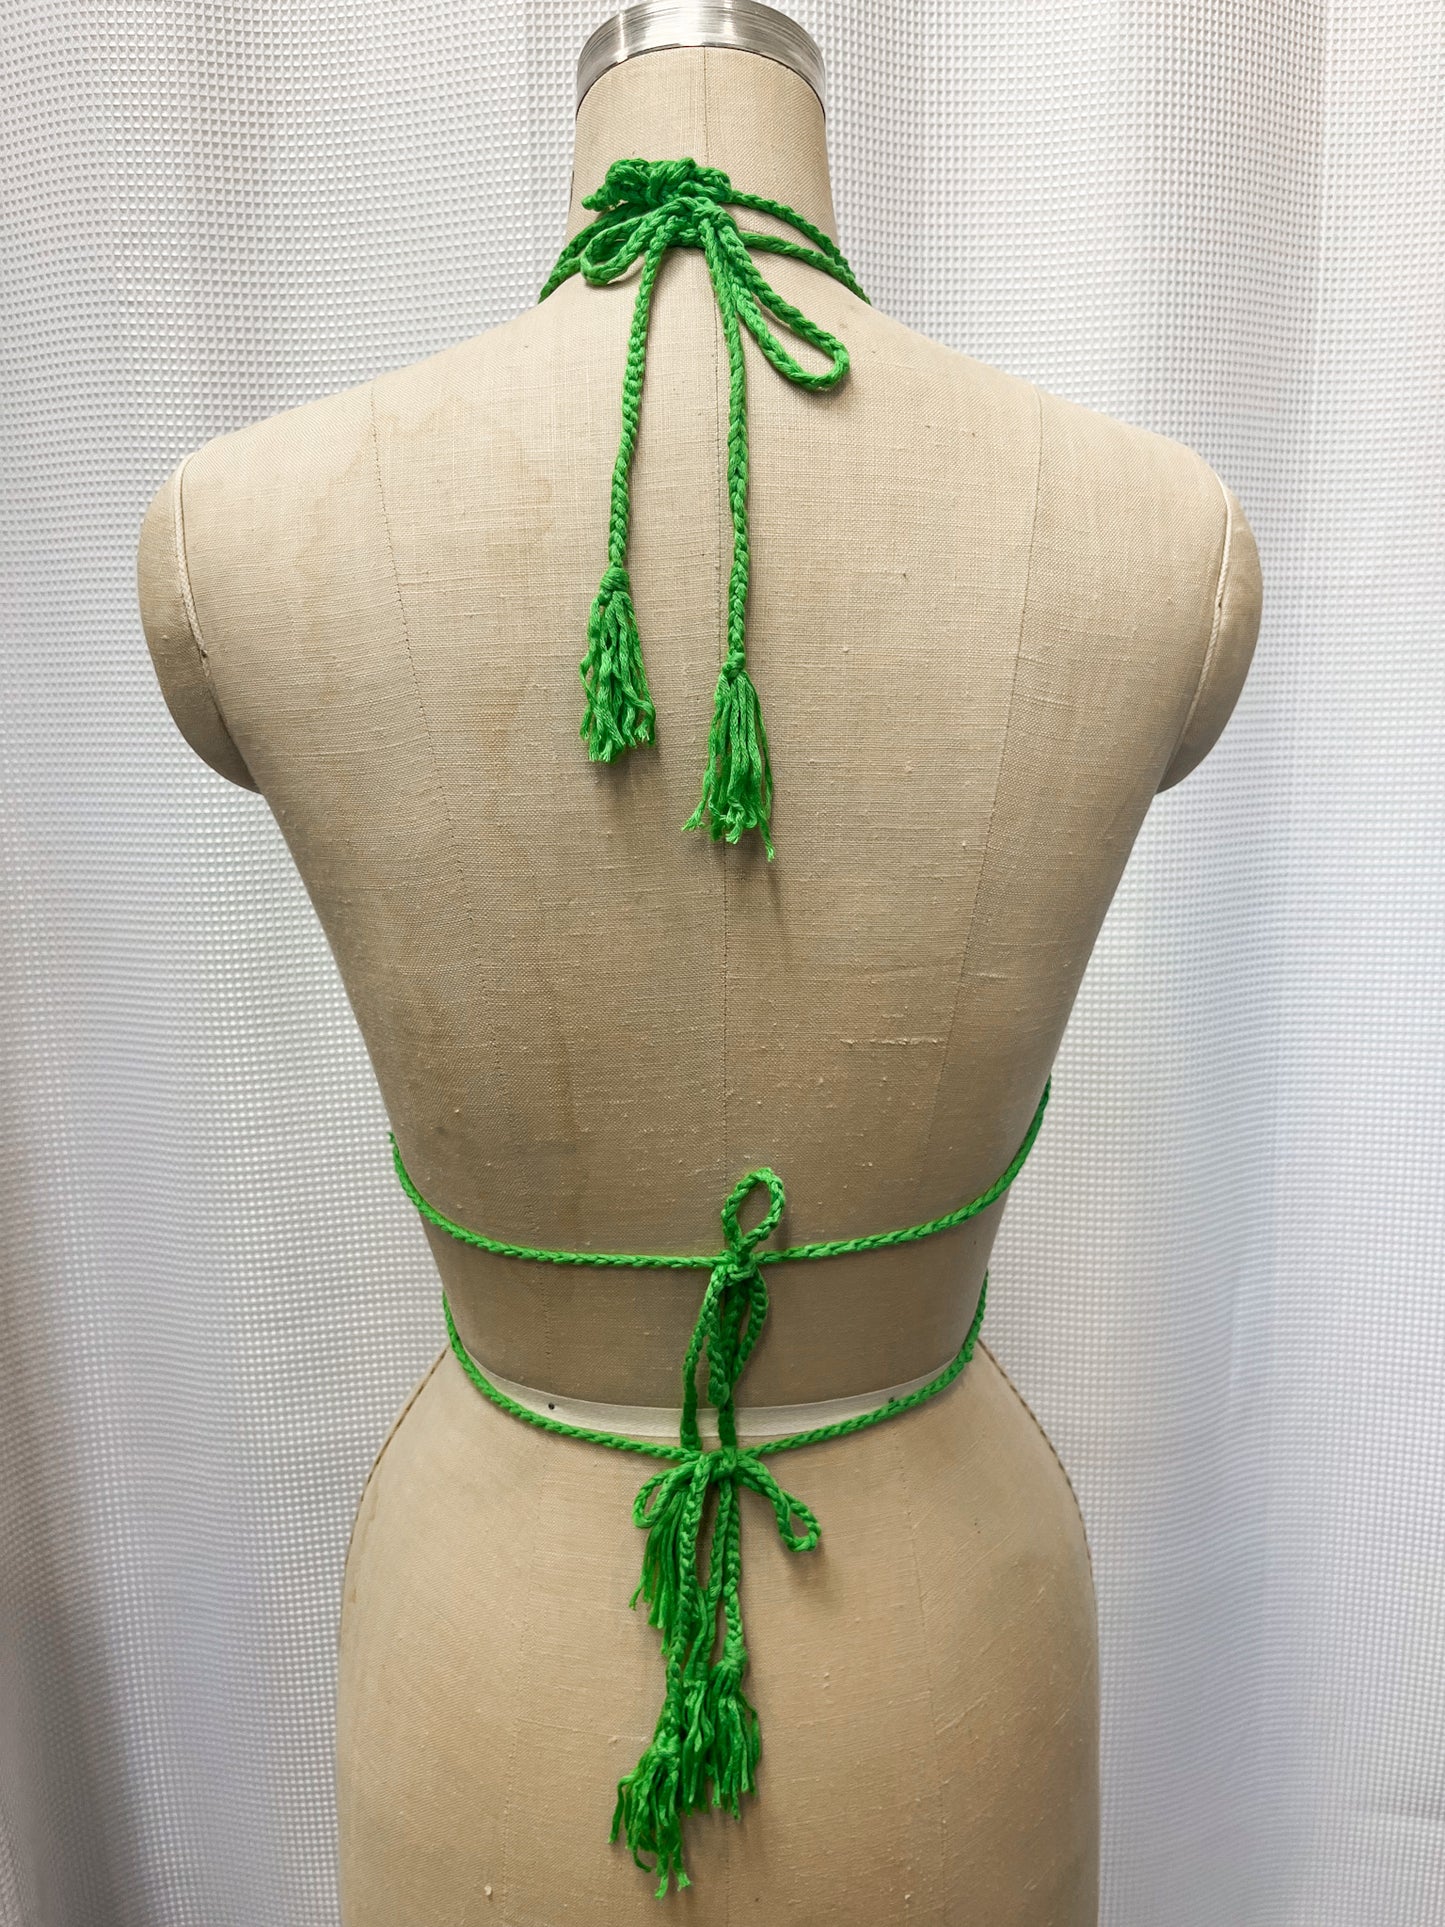 Crochet Halter Top with Double Tie Back - Green